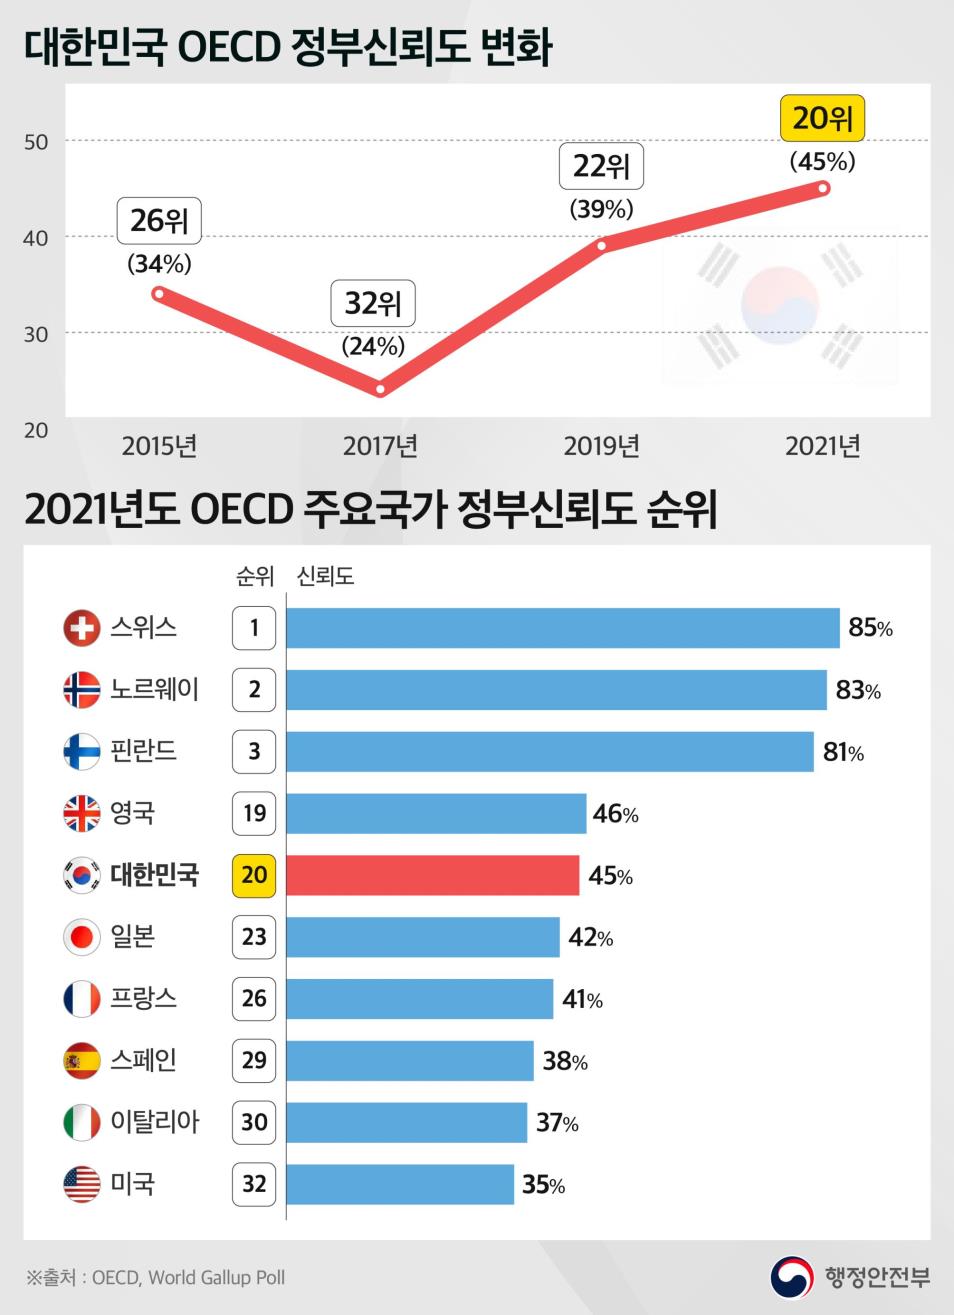 [테크월드] 한국 국민 정부신뢰도 45%로 OECD 20위...역대 최고 : [보도기사] 이태준 교수